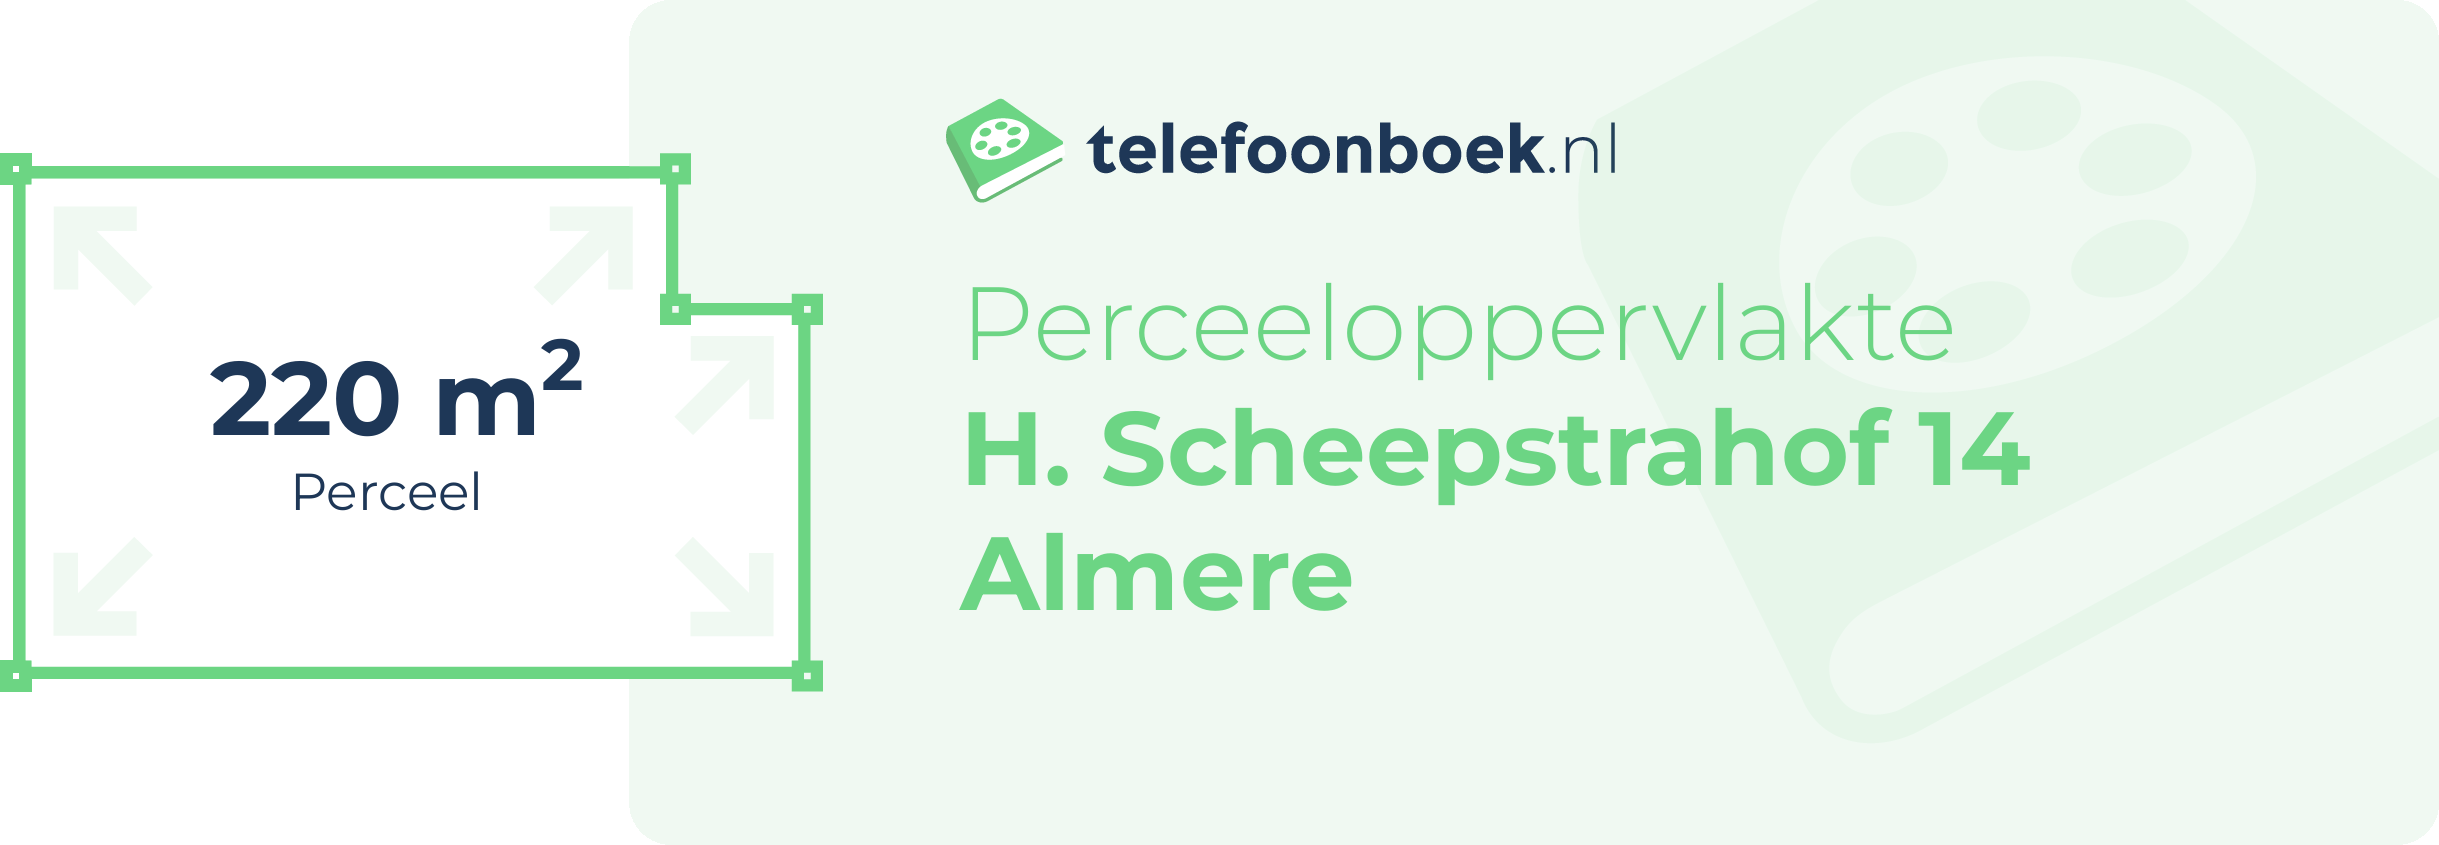 Perceeloppervlakte H. Scheepstrahof 14 Almere